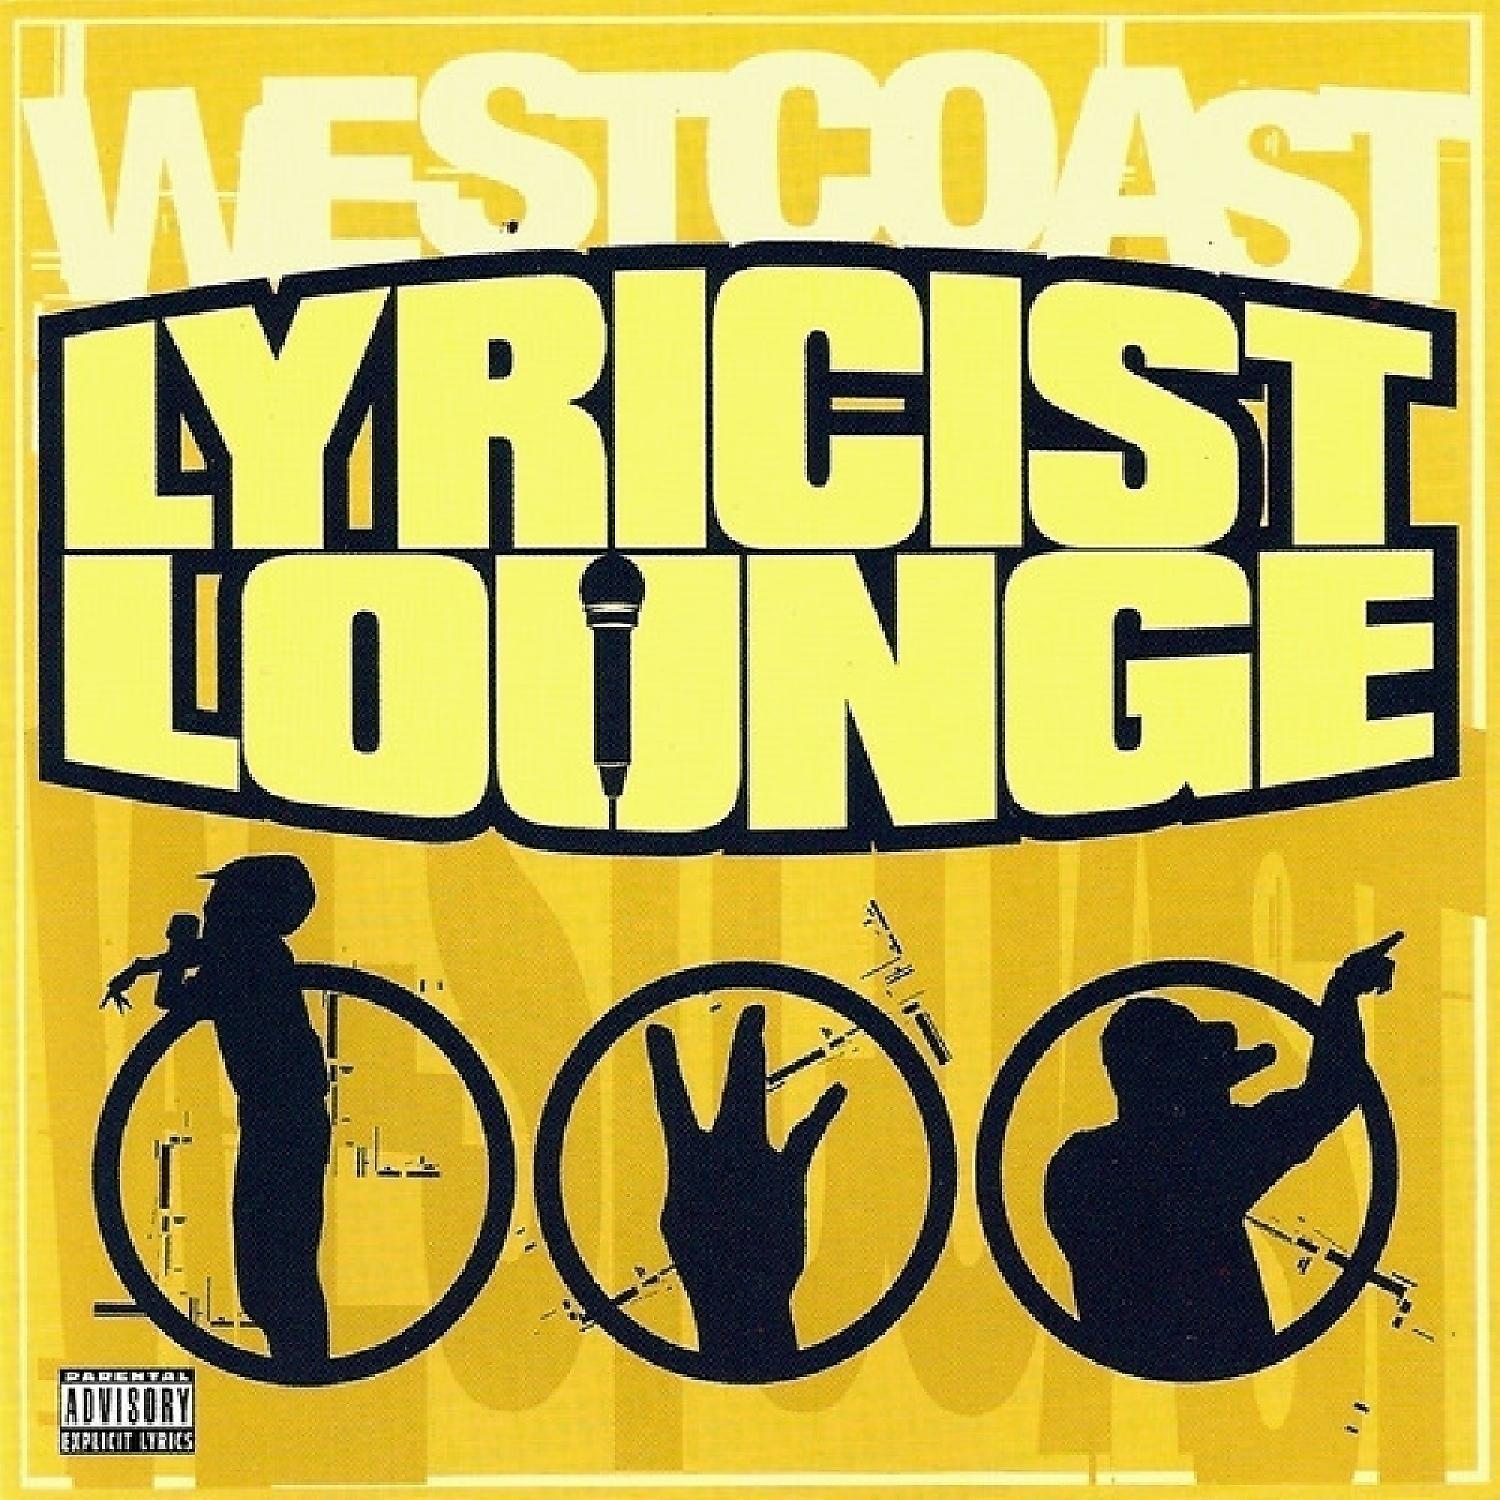 Постер альбома Westcoast Lyricist Lounge